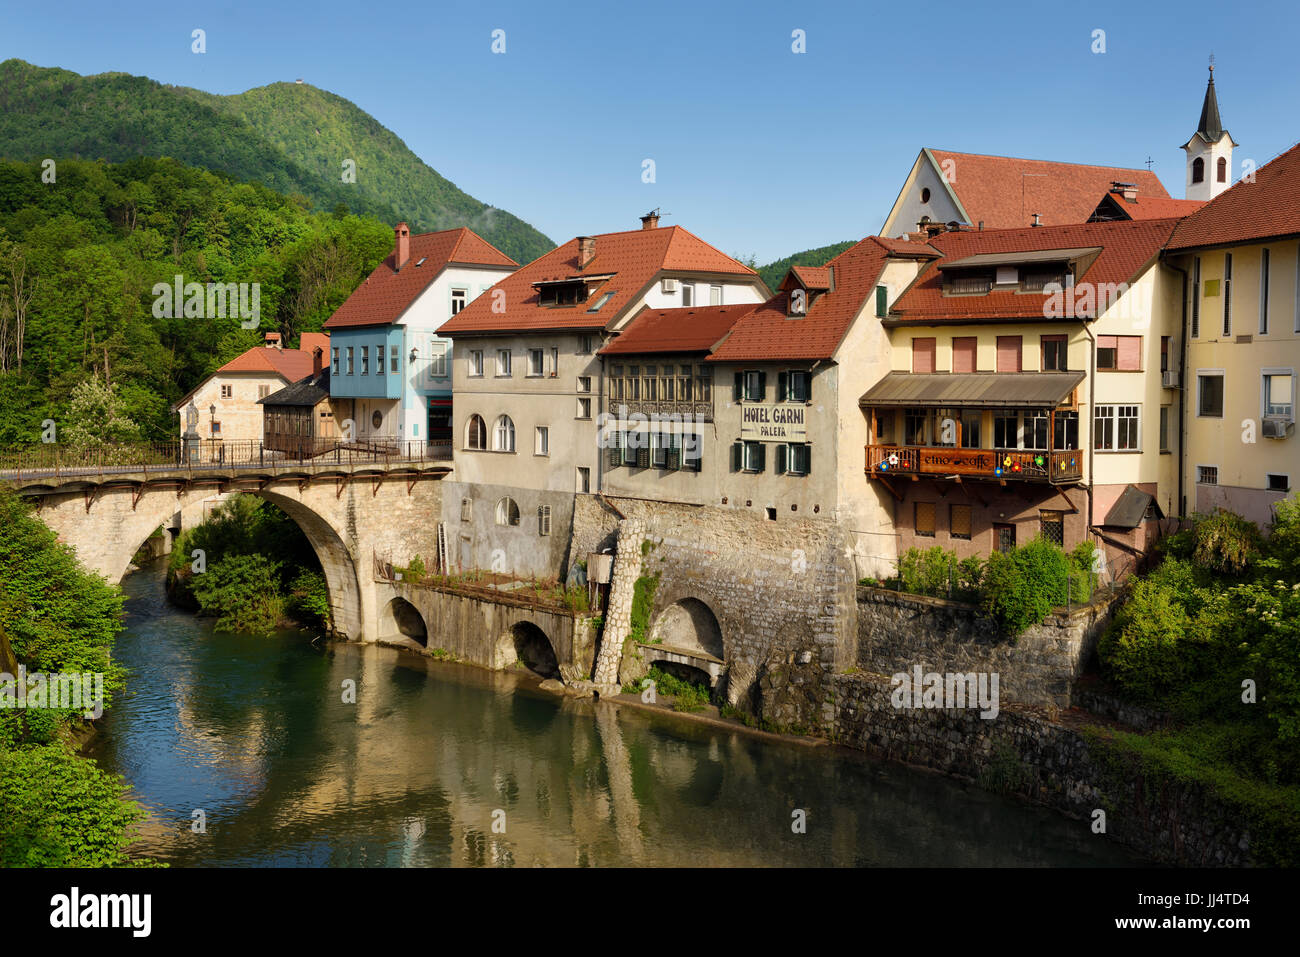 Älteste Steinbrücke in Slowenien Kapuziner Brücke und Kirche Glockenturm am Fluss Selca Sora mit steinernen Mauern umgebene Flussufern in Skofja Loka Dorf Stockfoto